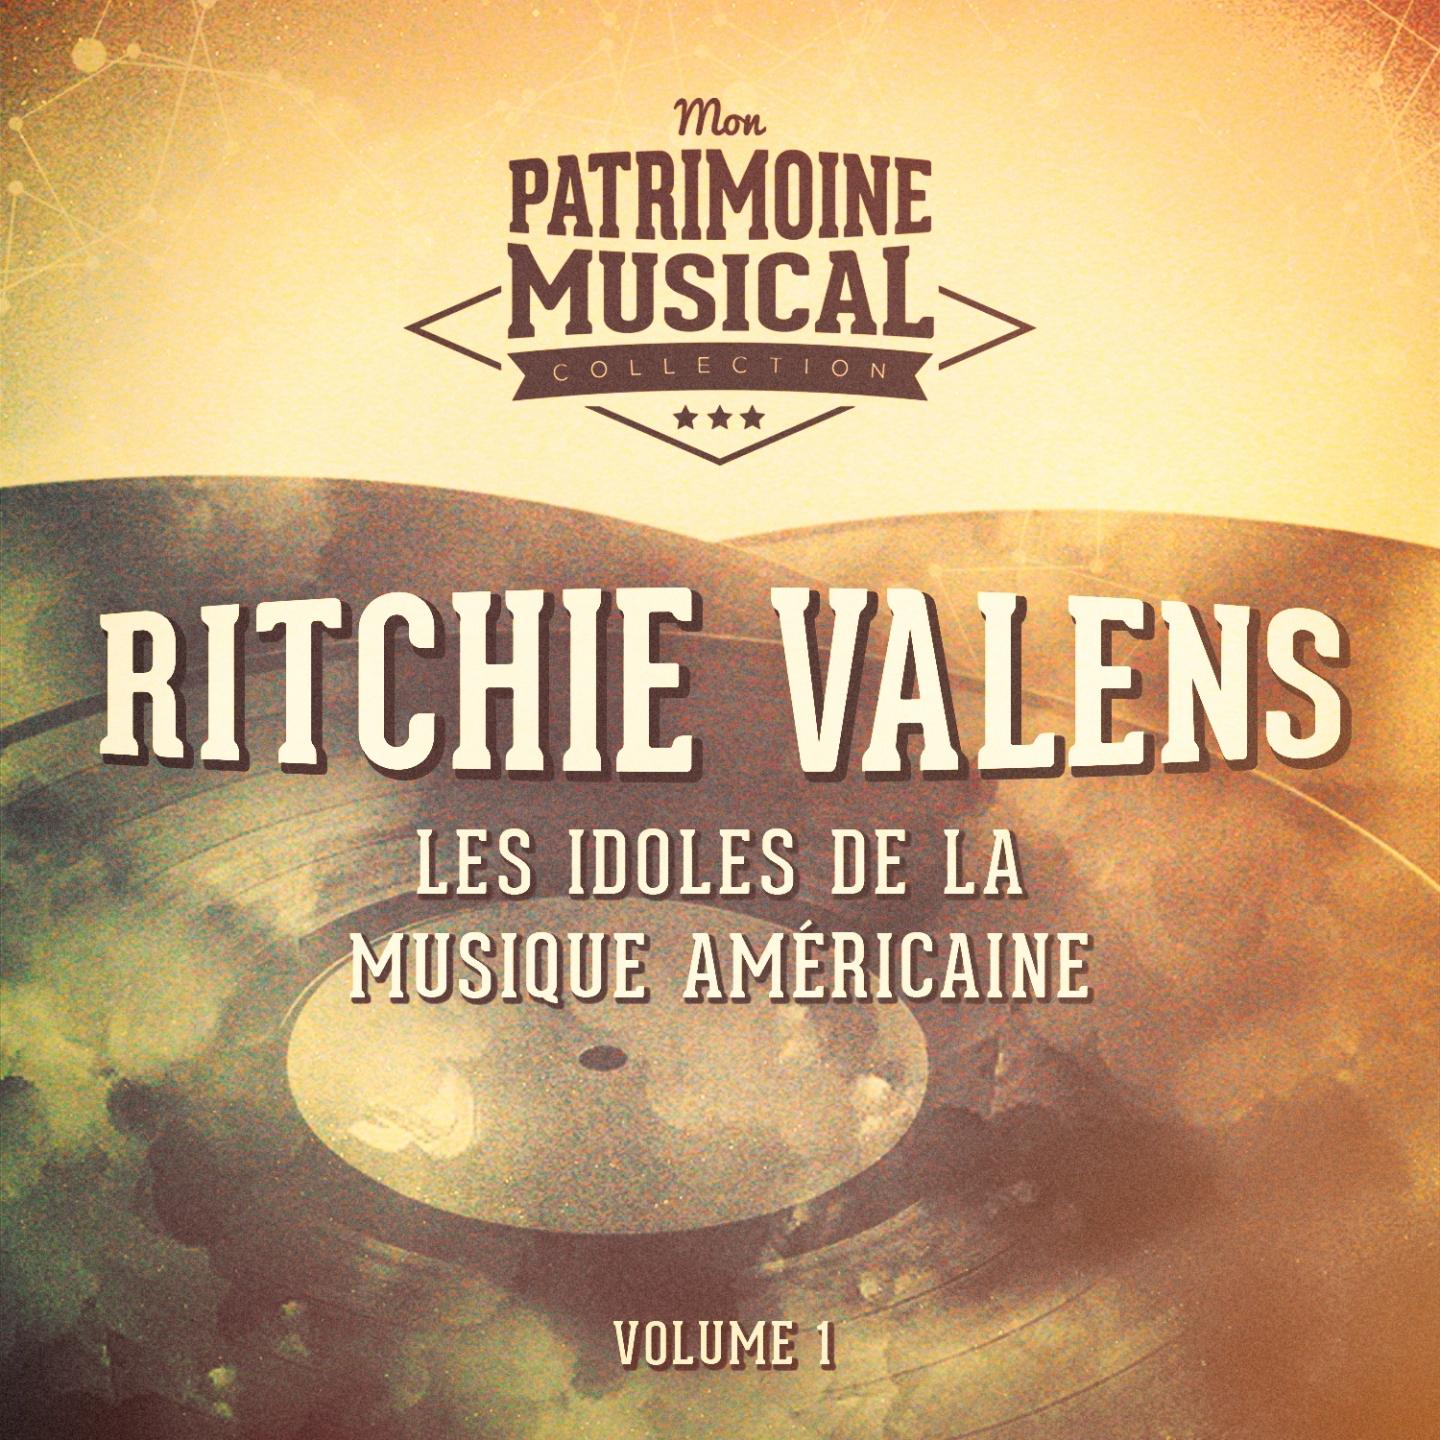 Les idoles de la musique américaine : Ritchie Valens, Vol. 1